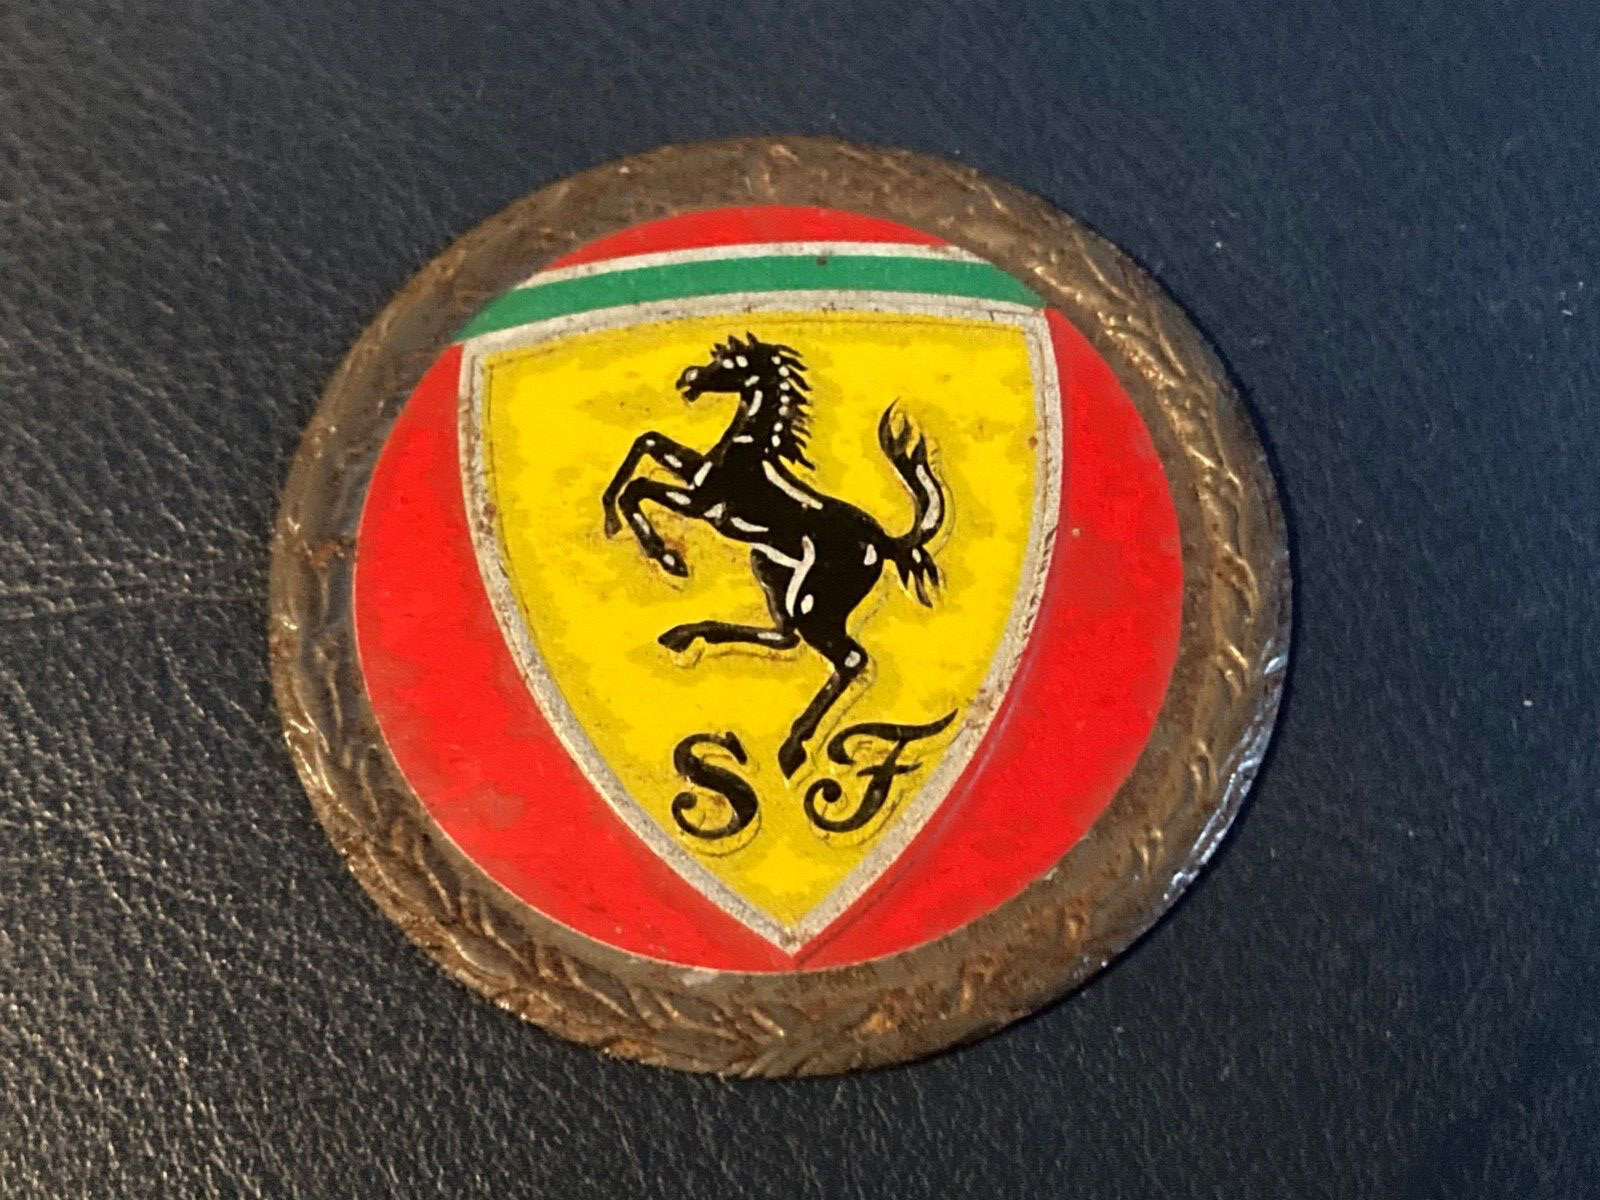 RARE VINTAGE FERRARI PLAQUE : STUNNING Ferrari stables - 1970's 